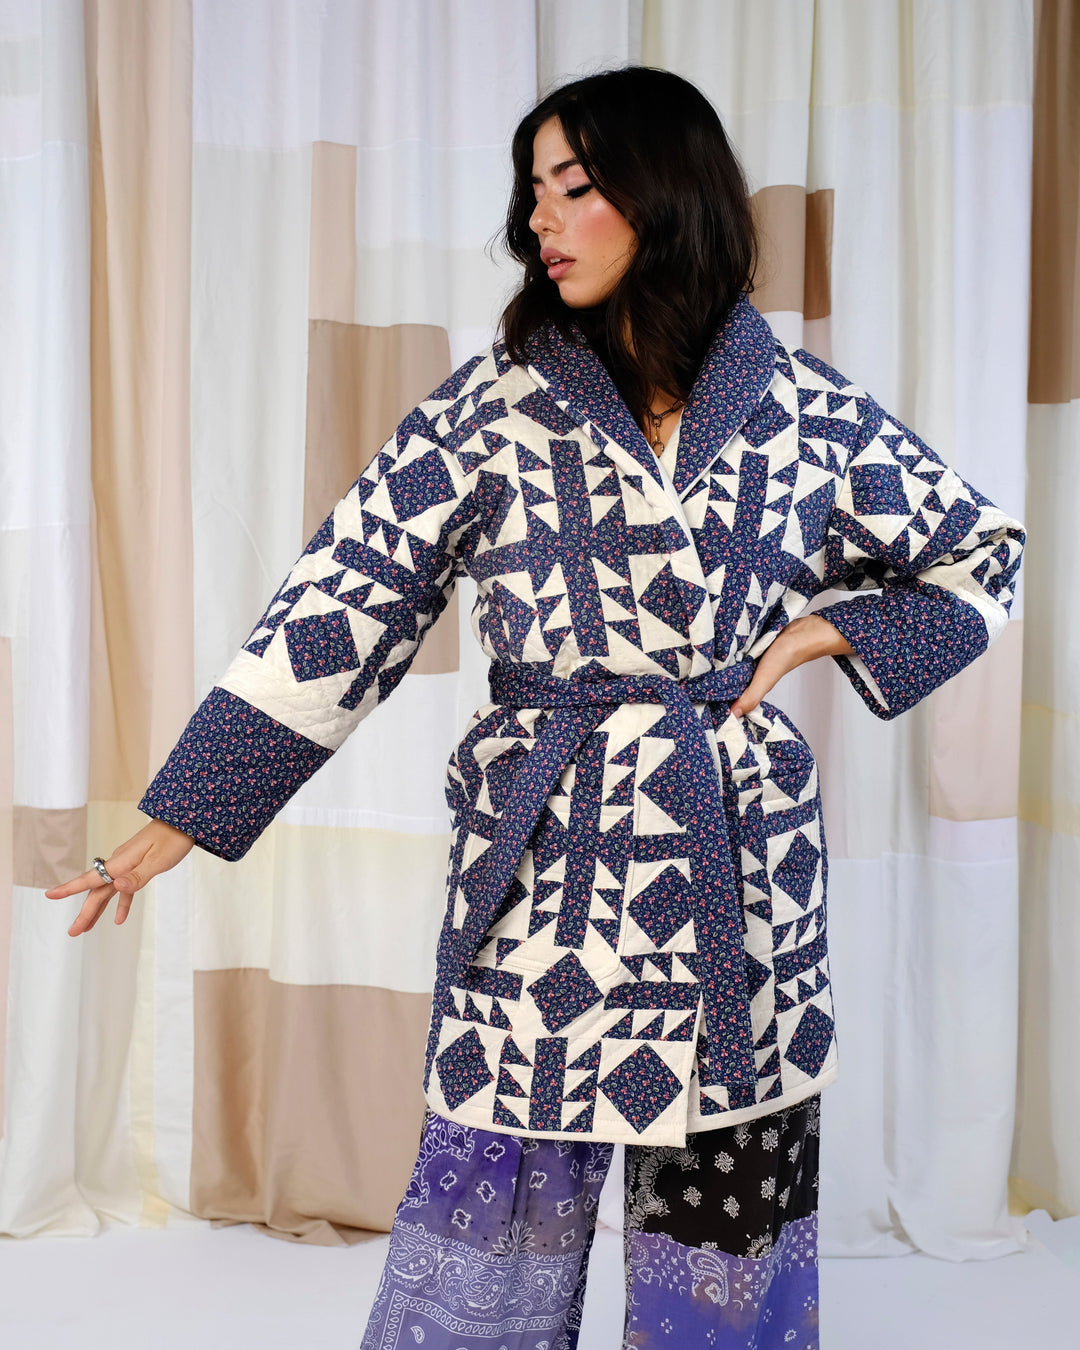 Fuchsia Velvet Blanket Robe Coat